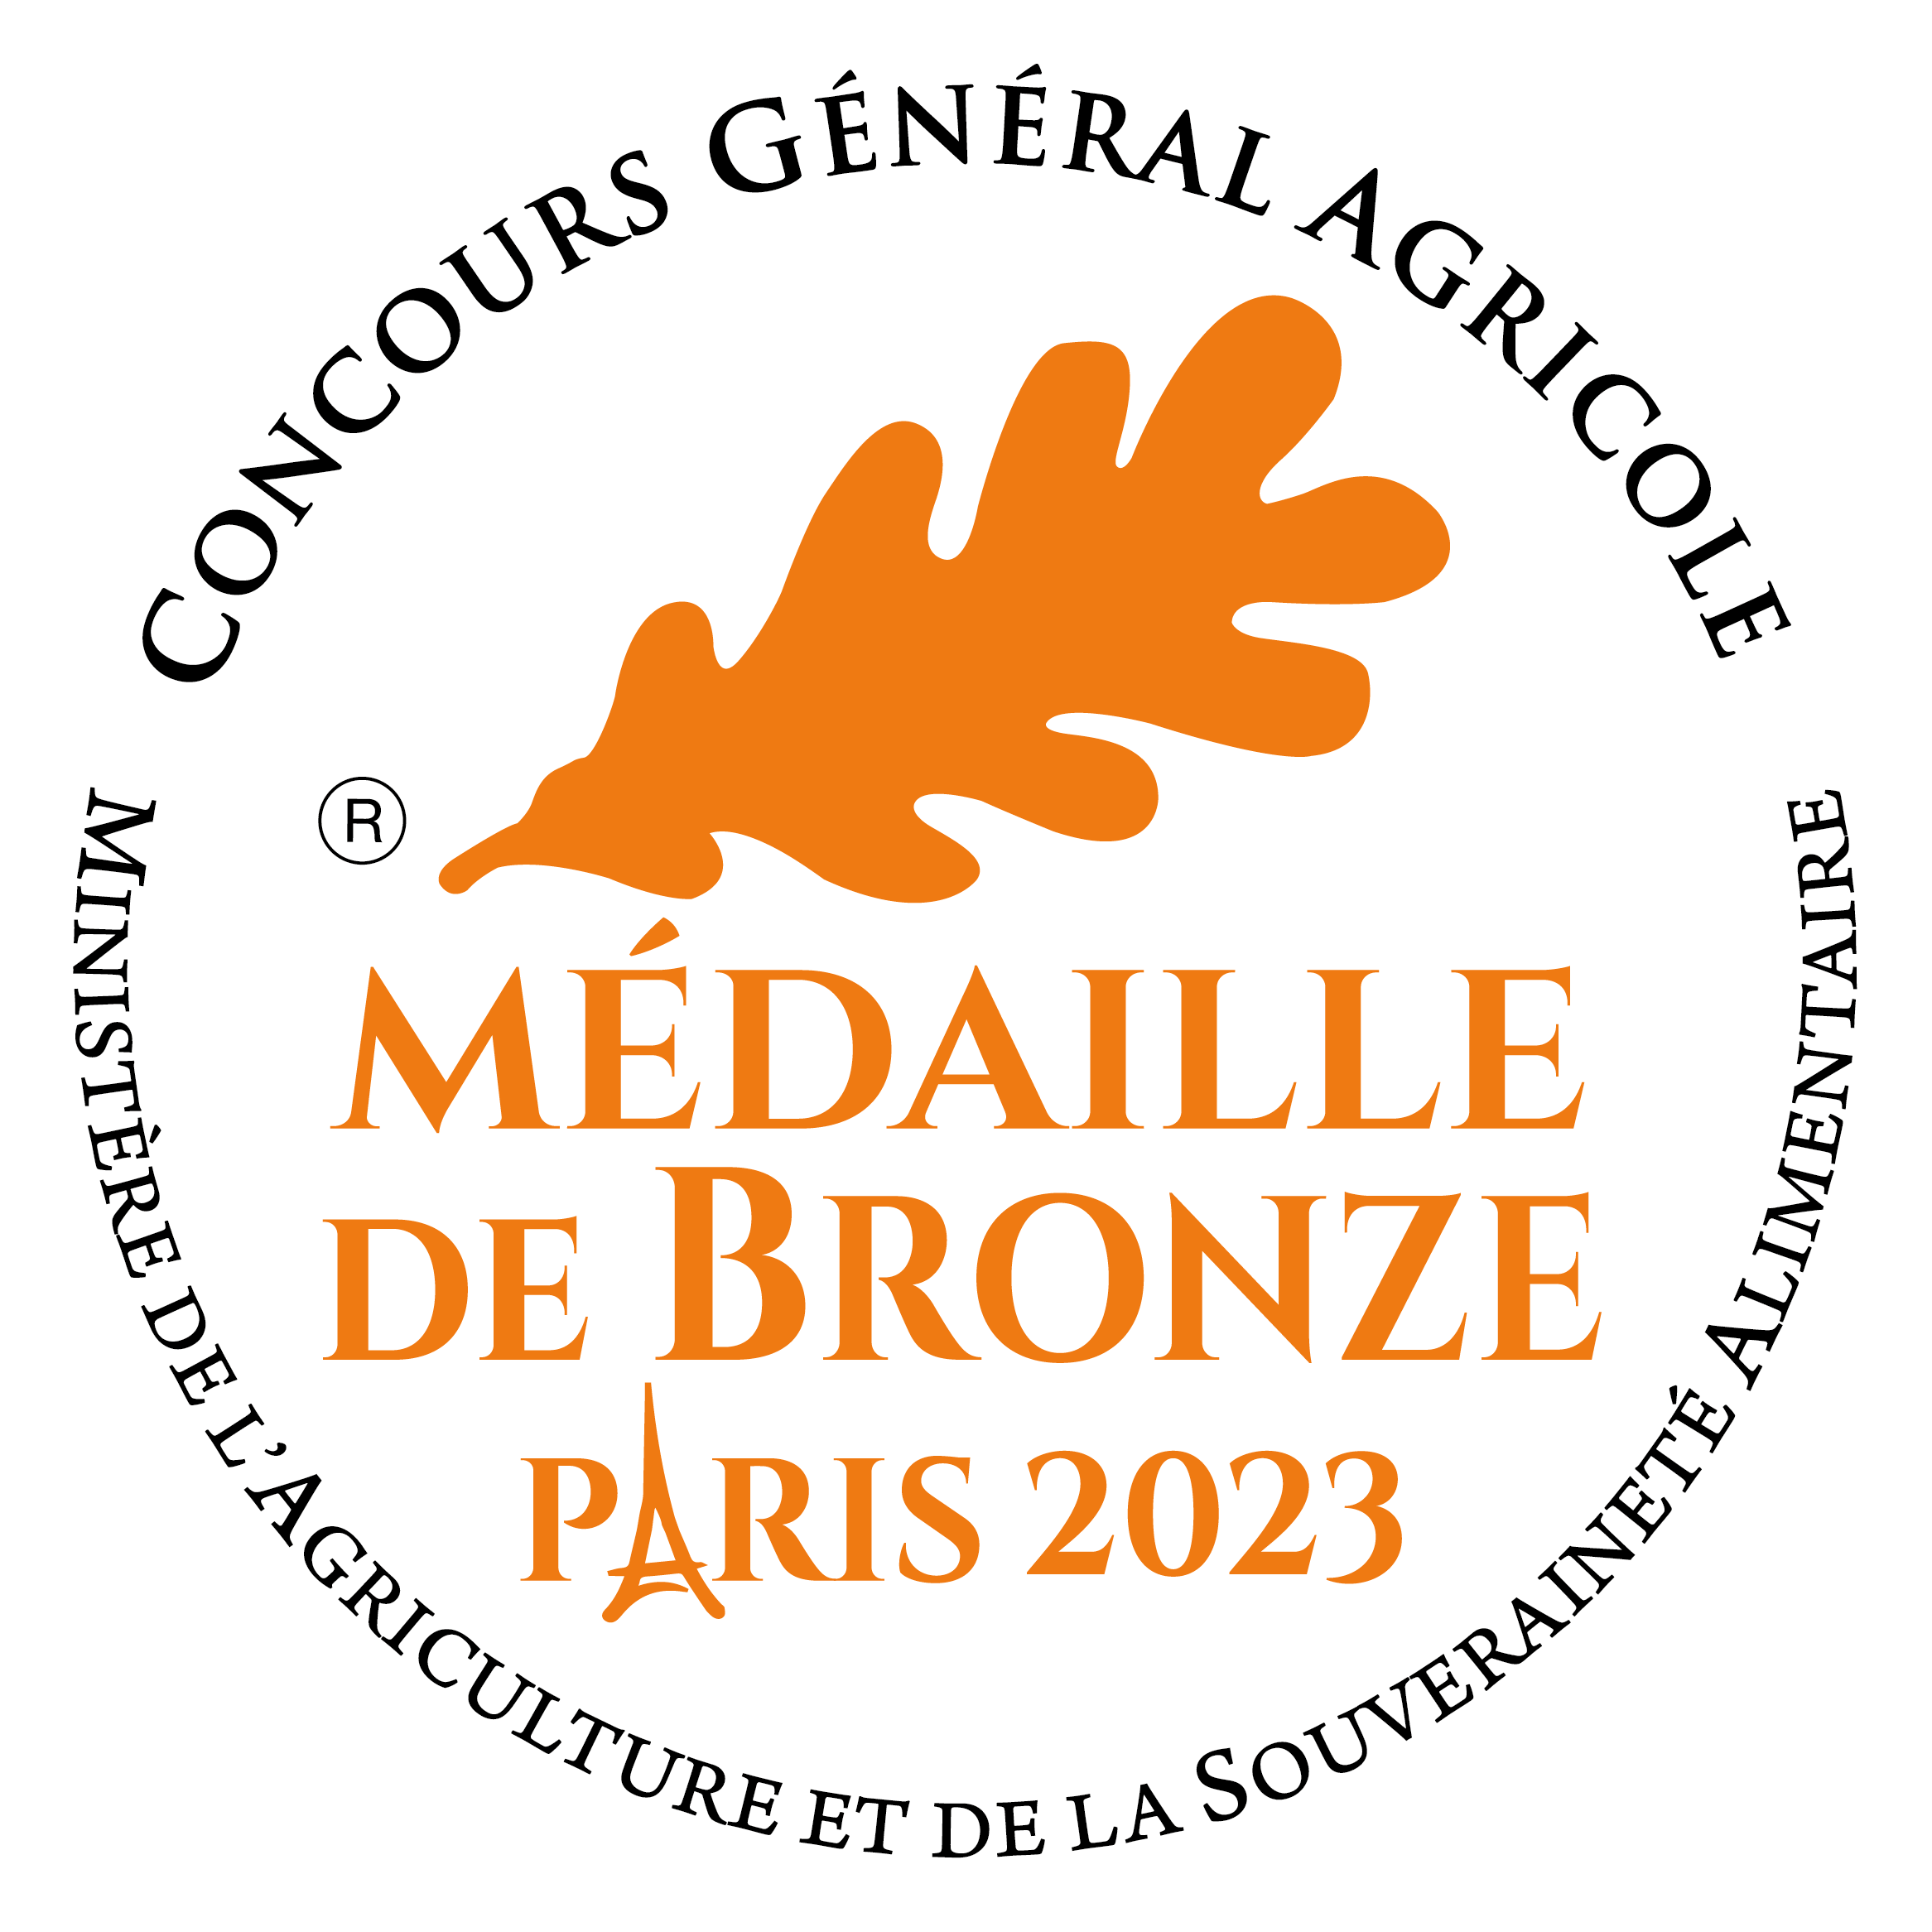 MEDAILLE BRONZE 2023 Concours général Agricole Paris